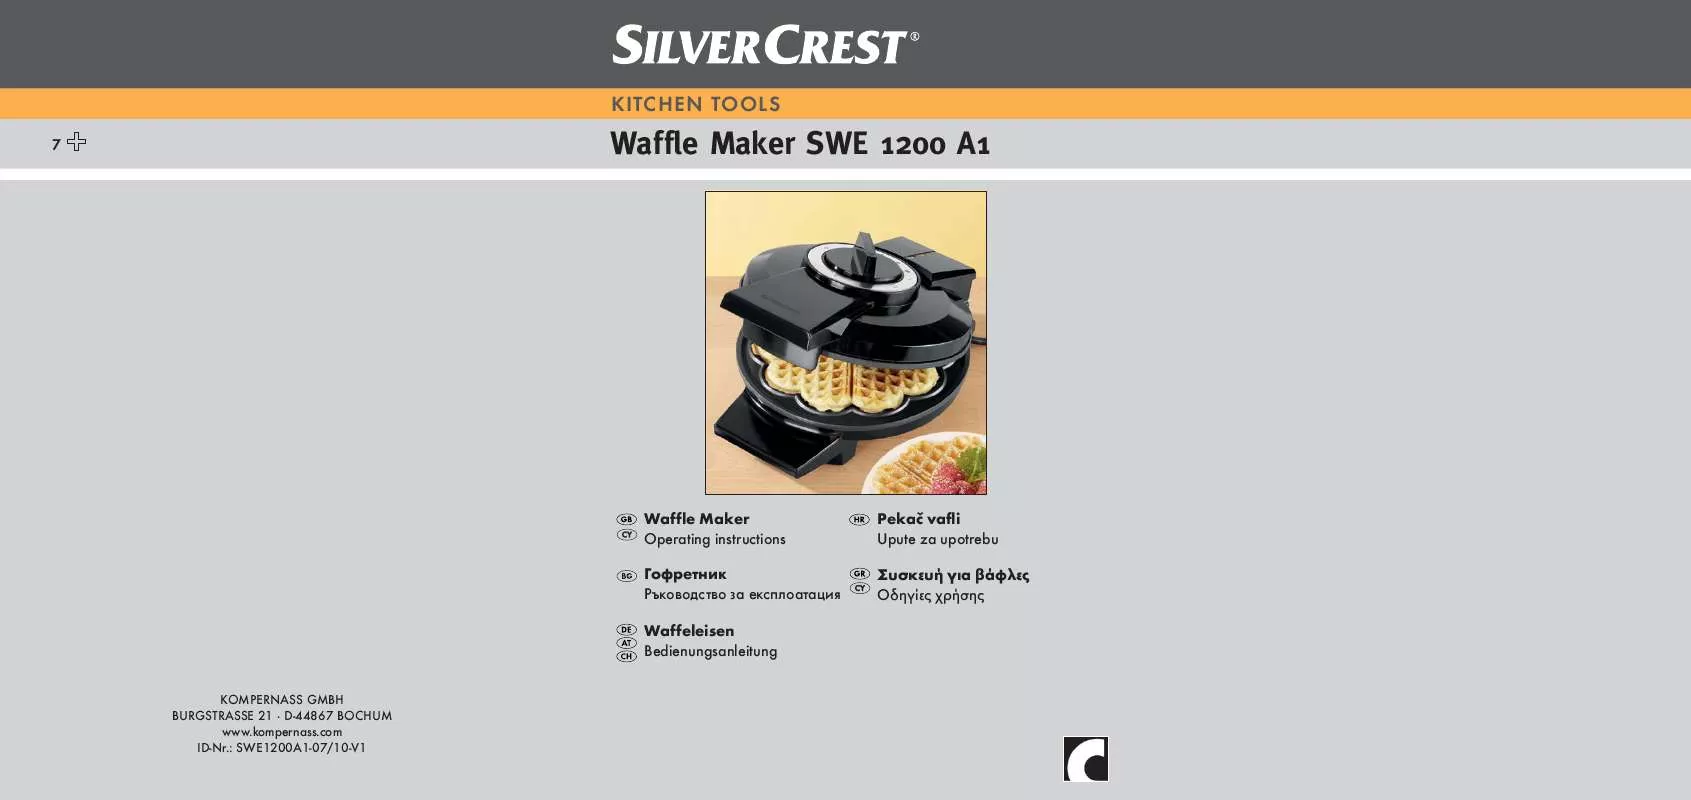 Mode d'emploi SILVERCREST SWE 1200 A1 WAFFLE MAKER